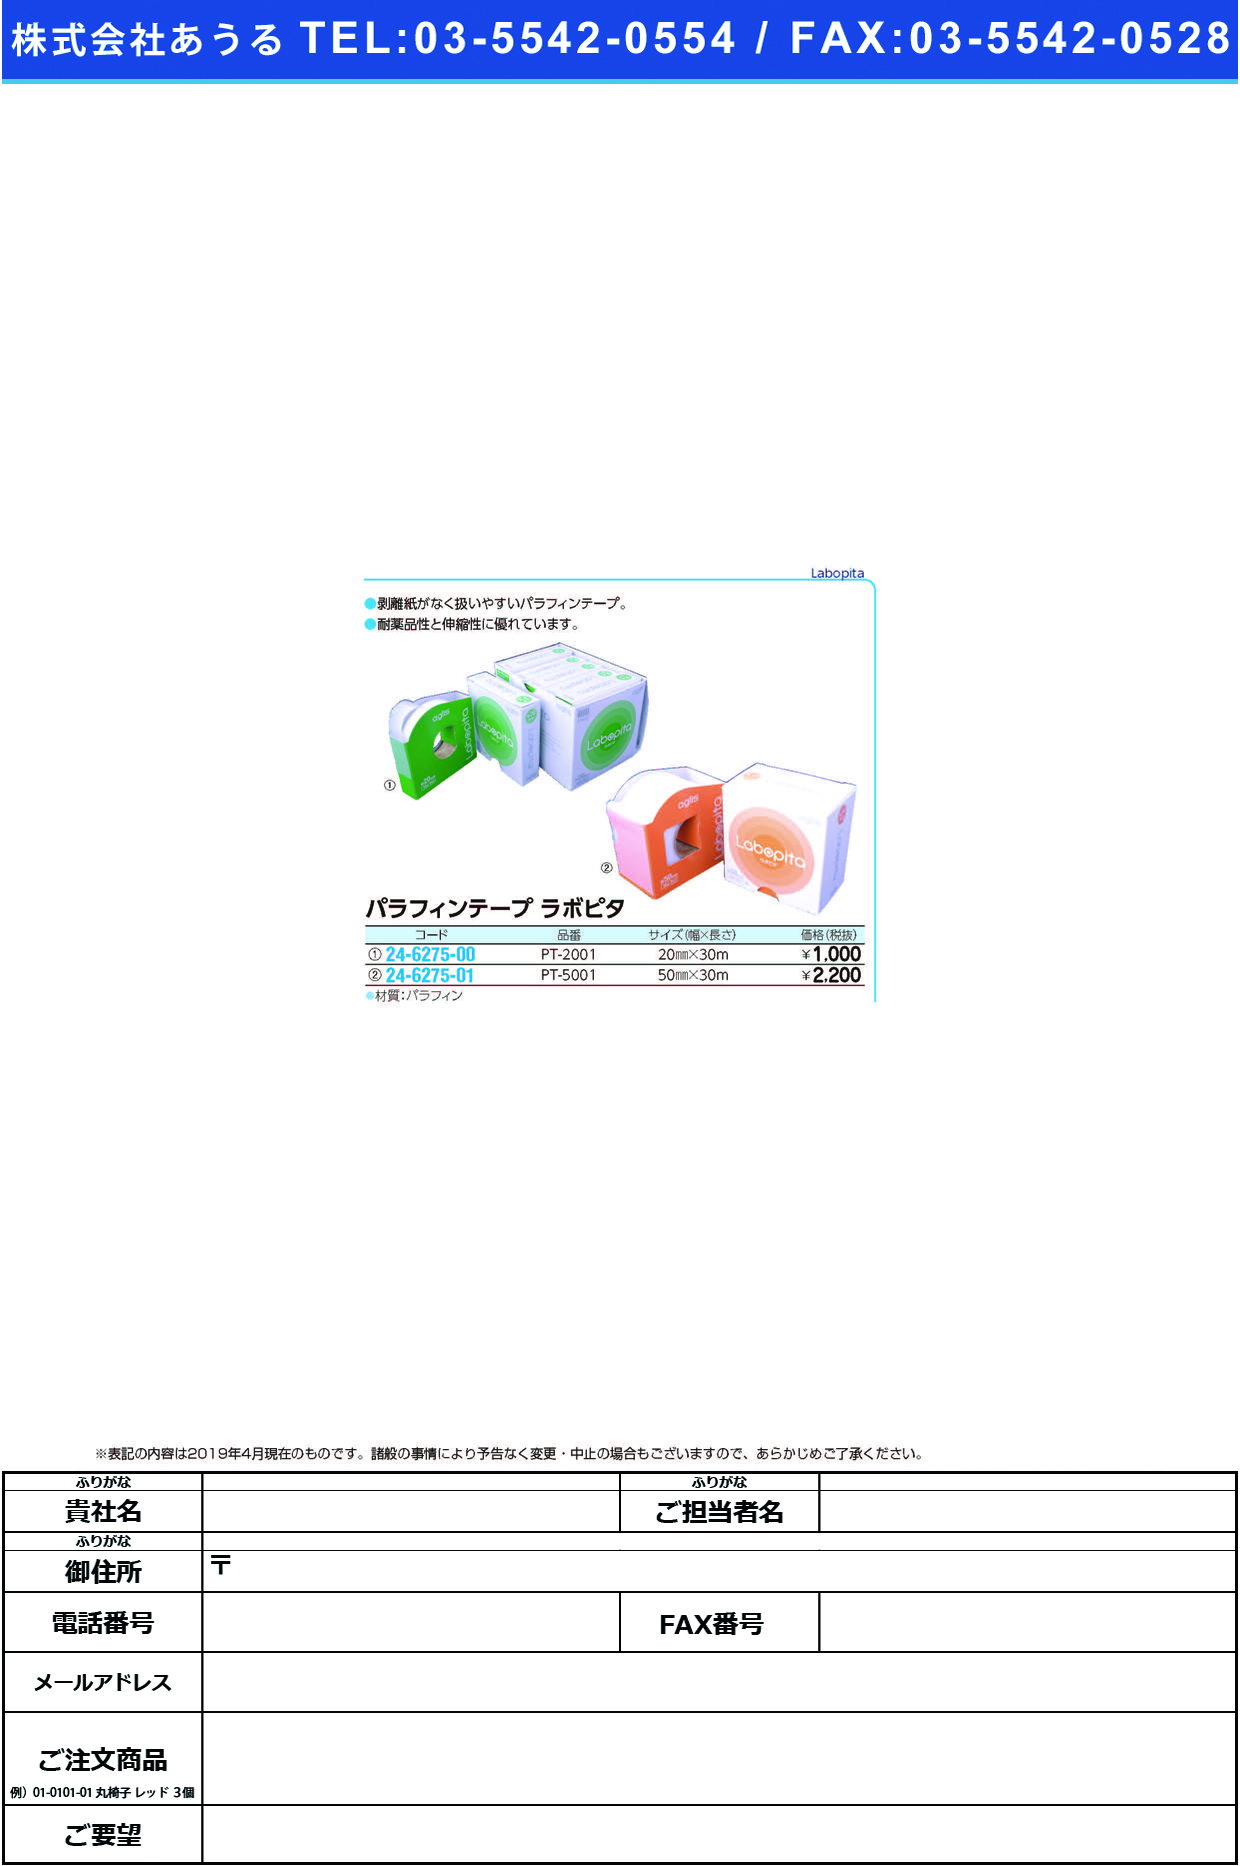 (24-6275-00)パラフィンテープラボピタ PT-2001(20MMX30M) ﾊﾟﾗﾌｨﾝﾃｰﾌﾟﾗﾎﾞﾋﾟﾀ【1個単位】【2019年カタログ商品】